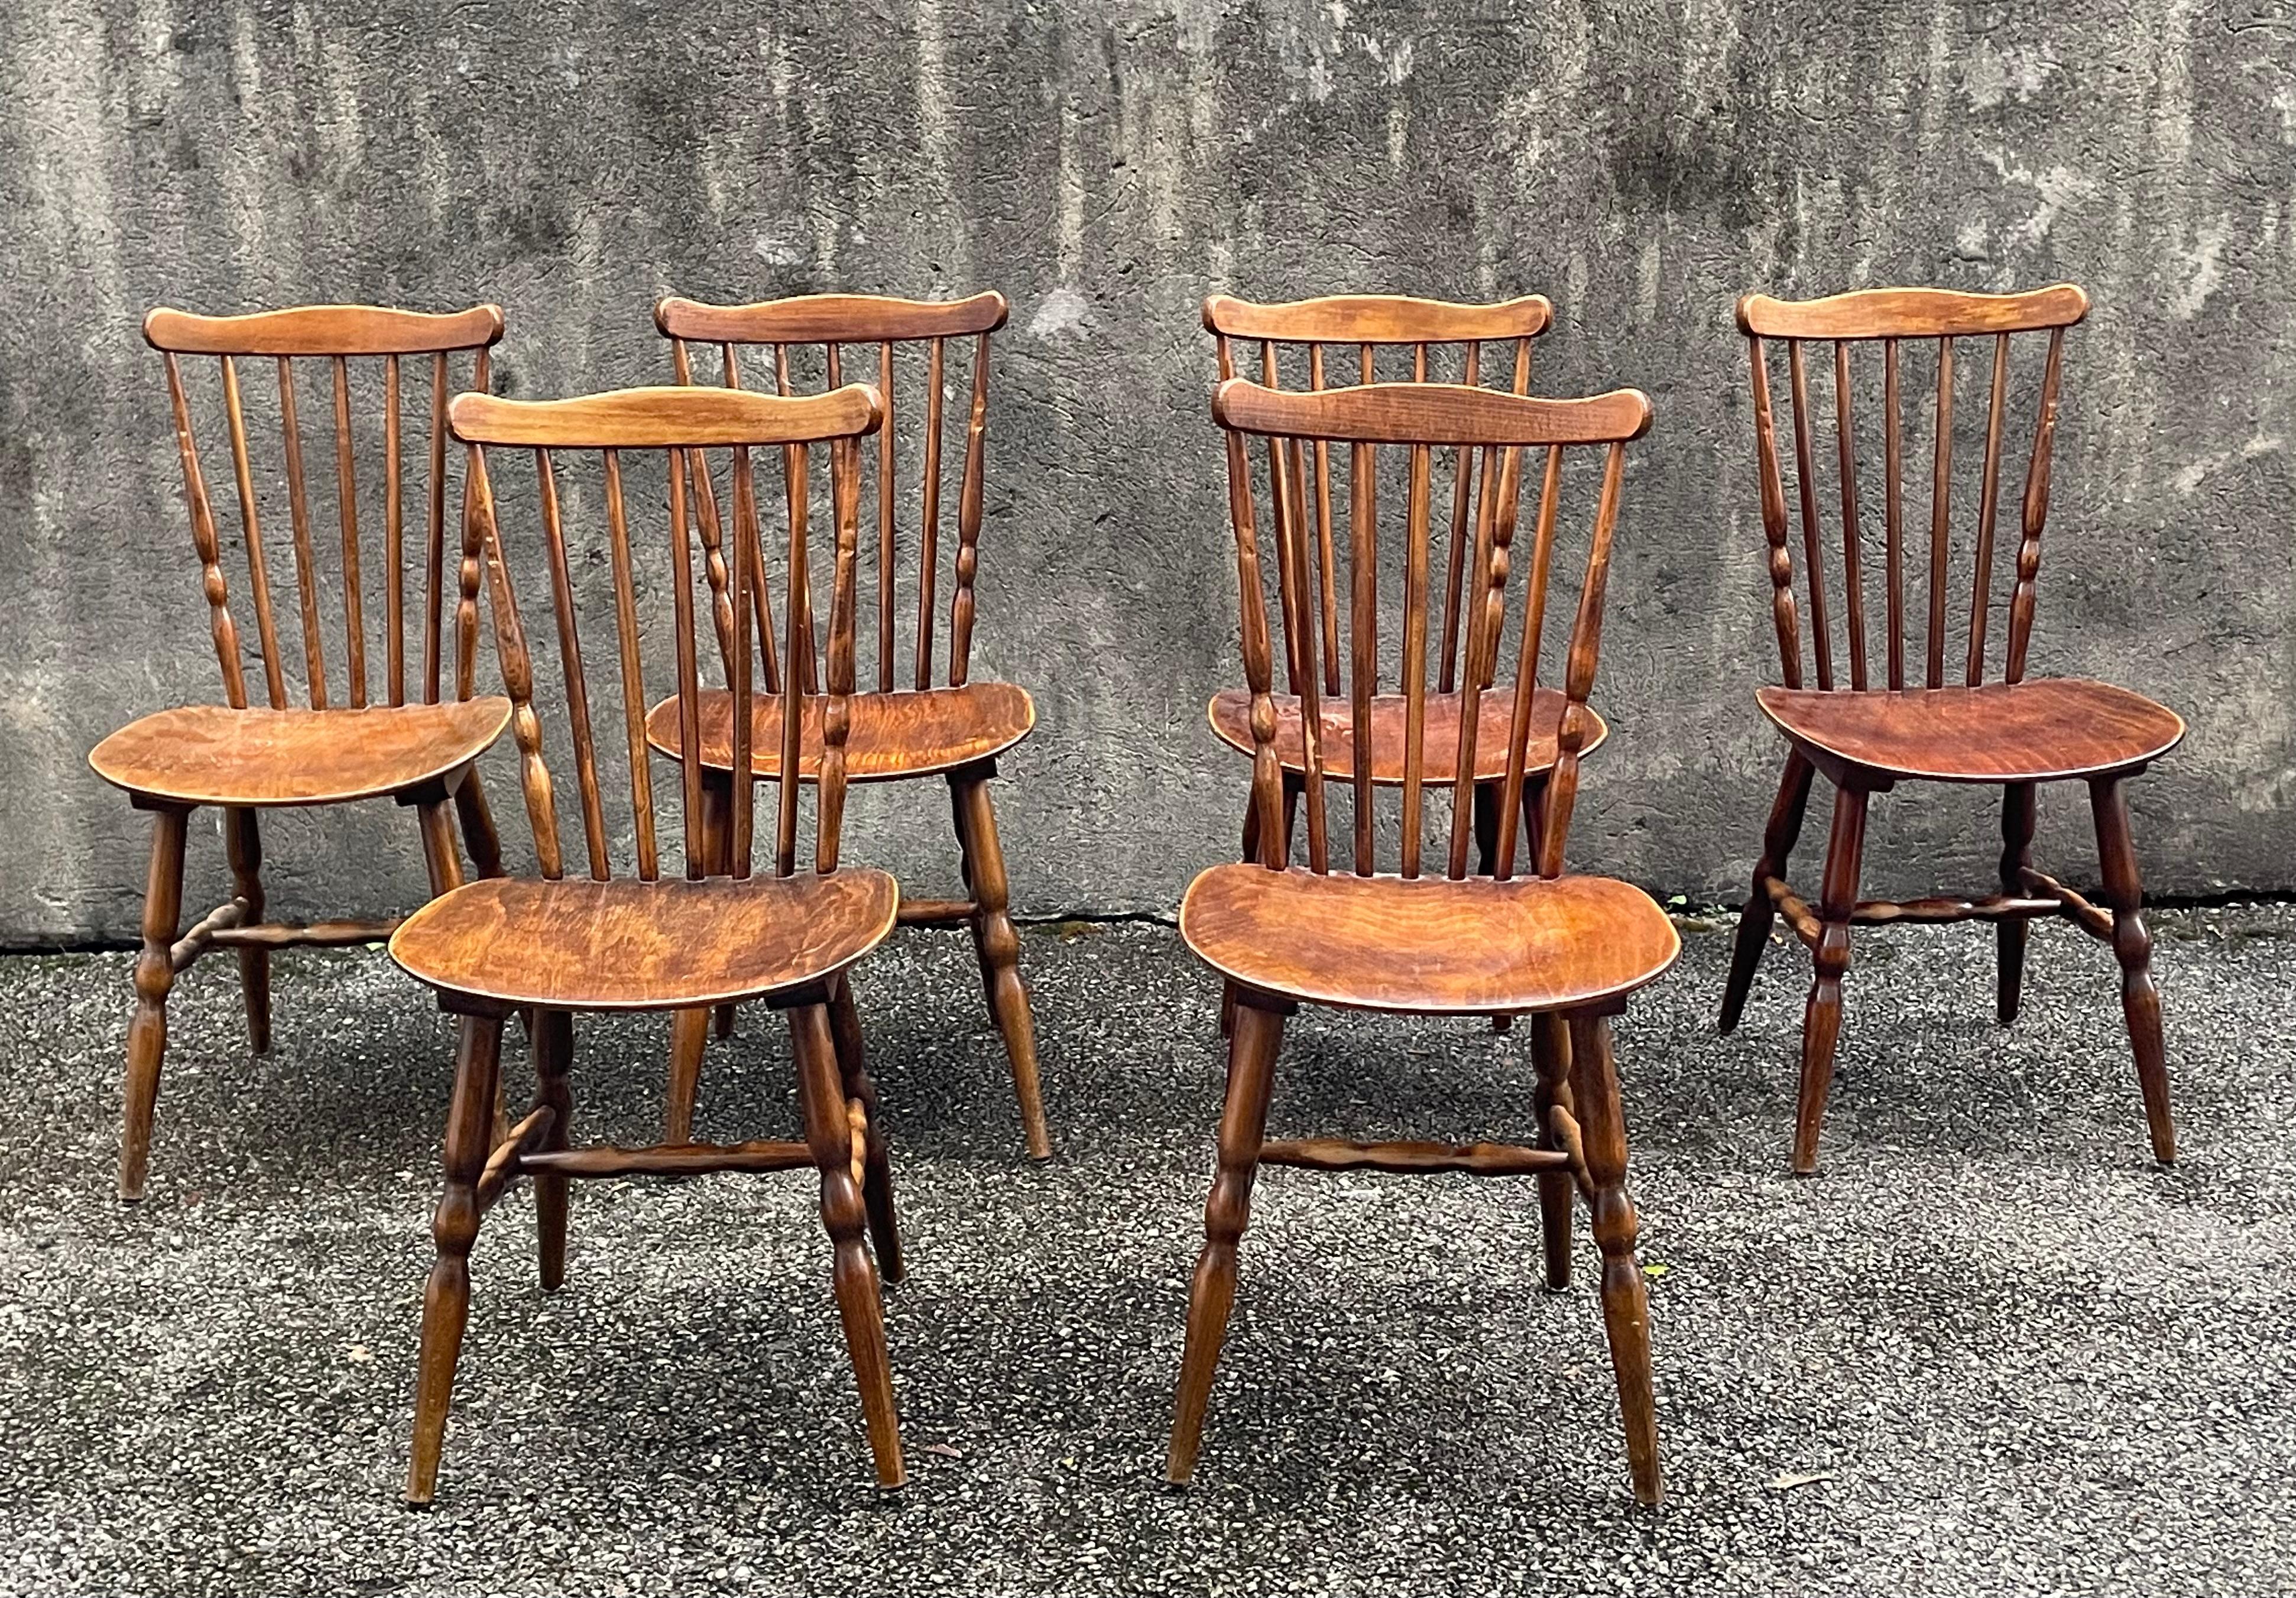 Ensemble de 6 chaises bistro Baumann. Il n'y a pas d'estampille mais ces chaises proviennent des mêmes usines. Tous n'ont pas été estampillés. Rares traces d'utilisation (photos) qui donnent le charme et l'authenticité de ces chaises. Dimensions :